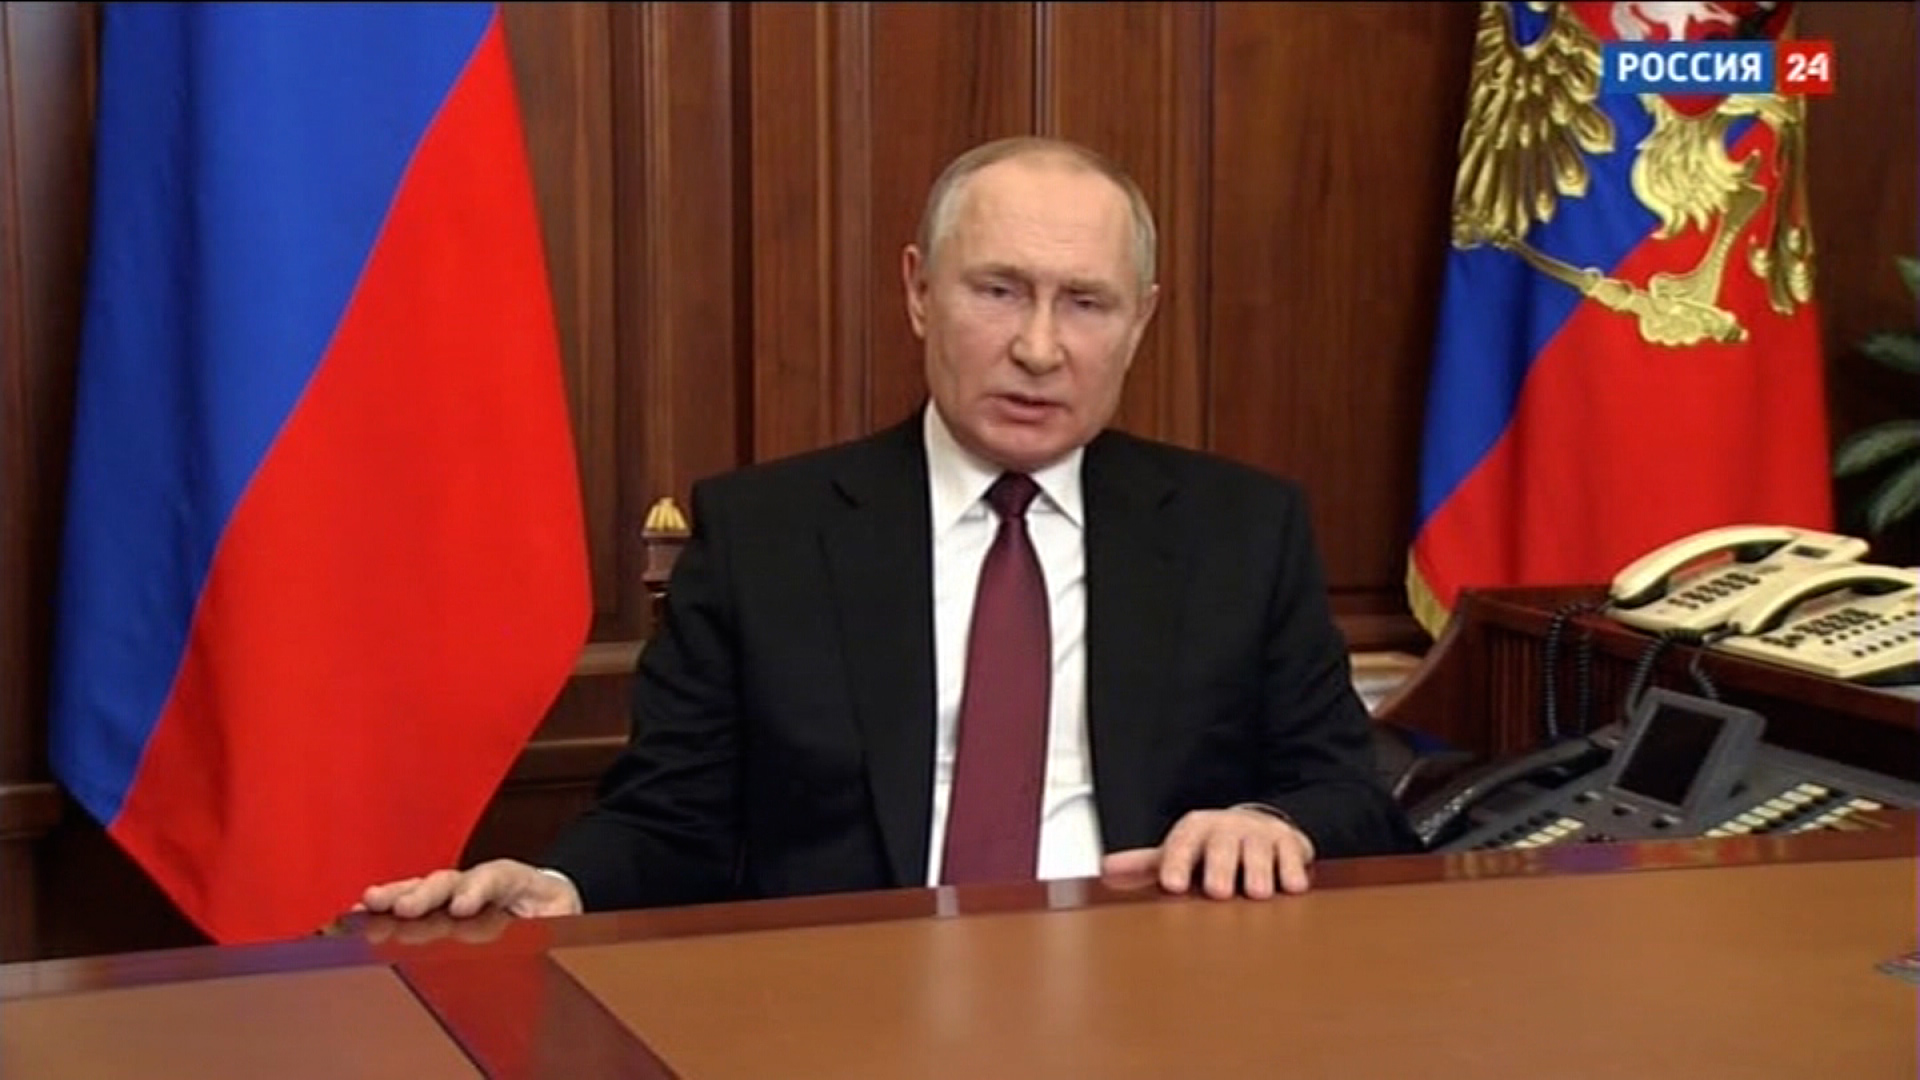 La televisión estatal rusa transmitió un discurso del presidente Vladimir Putin el 24 de febrero.